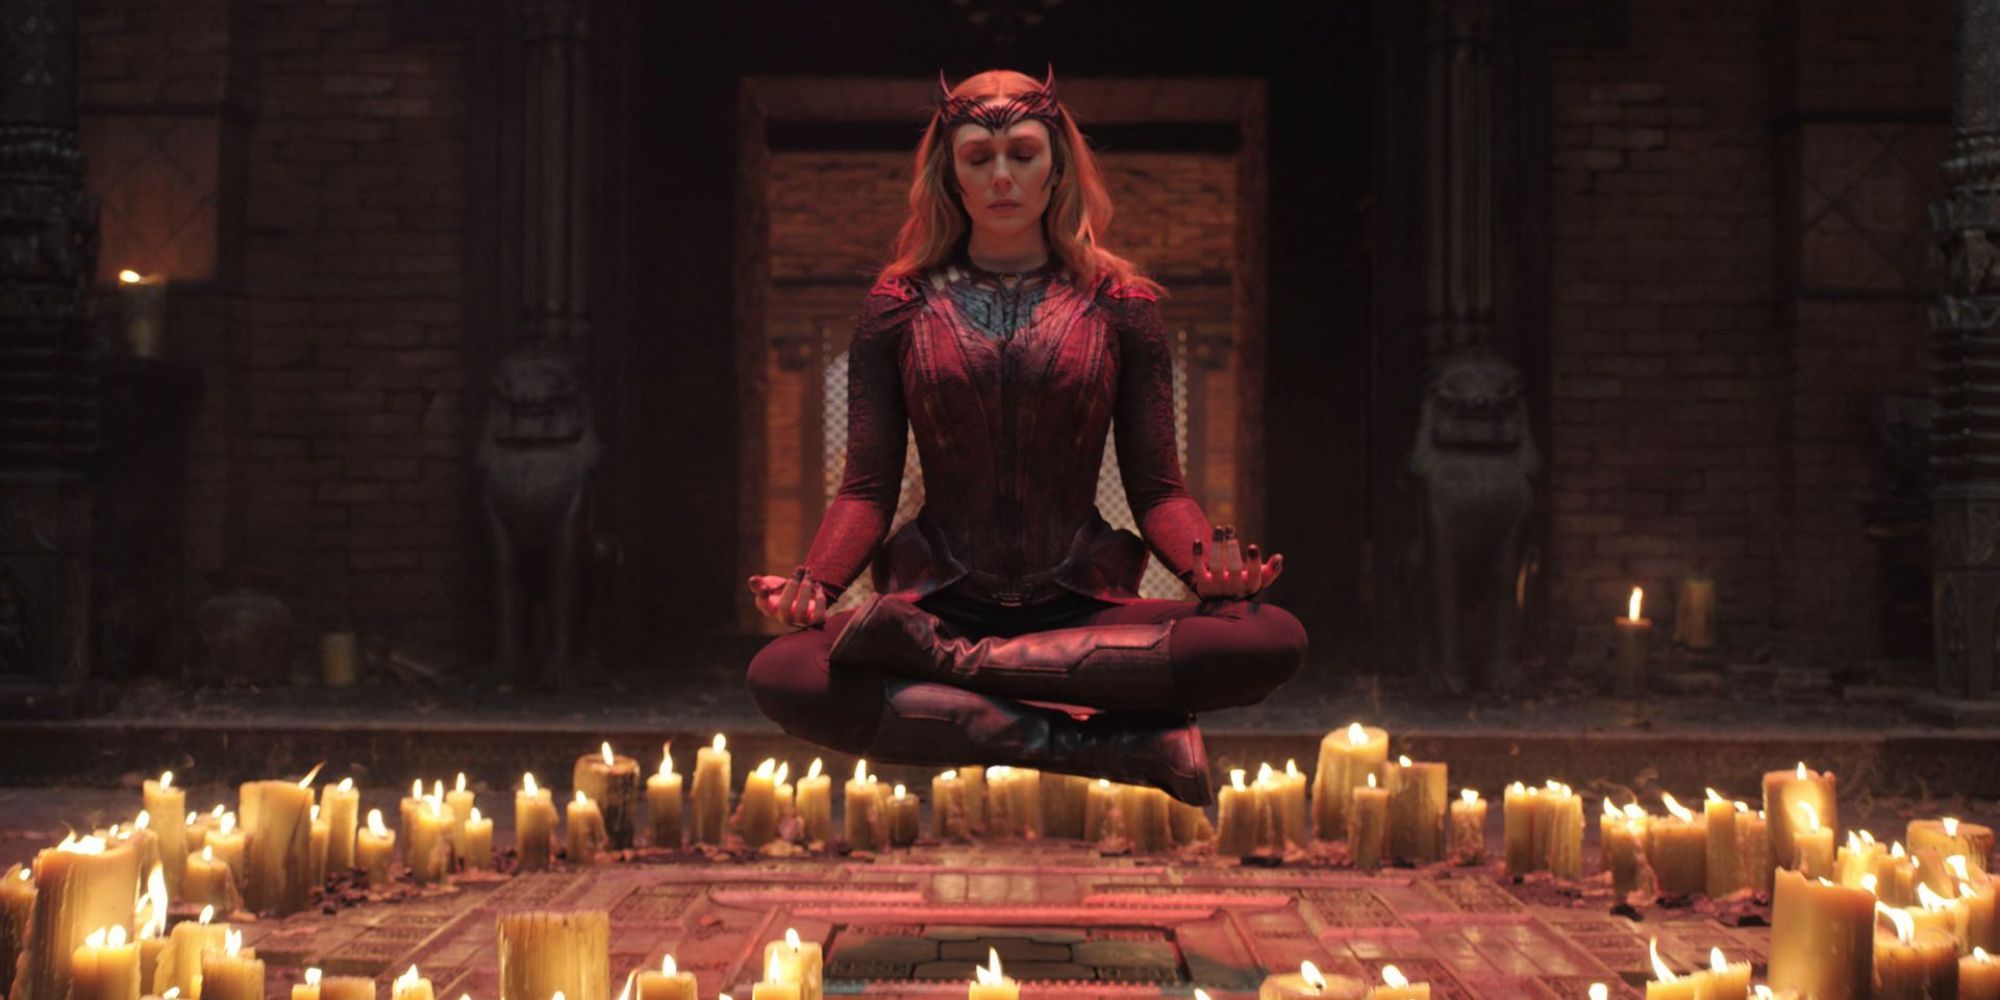 Uma mulher toda de vermelho está meditando acima do solo com muitas velas ao seu redor